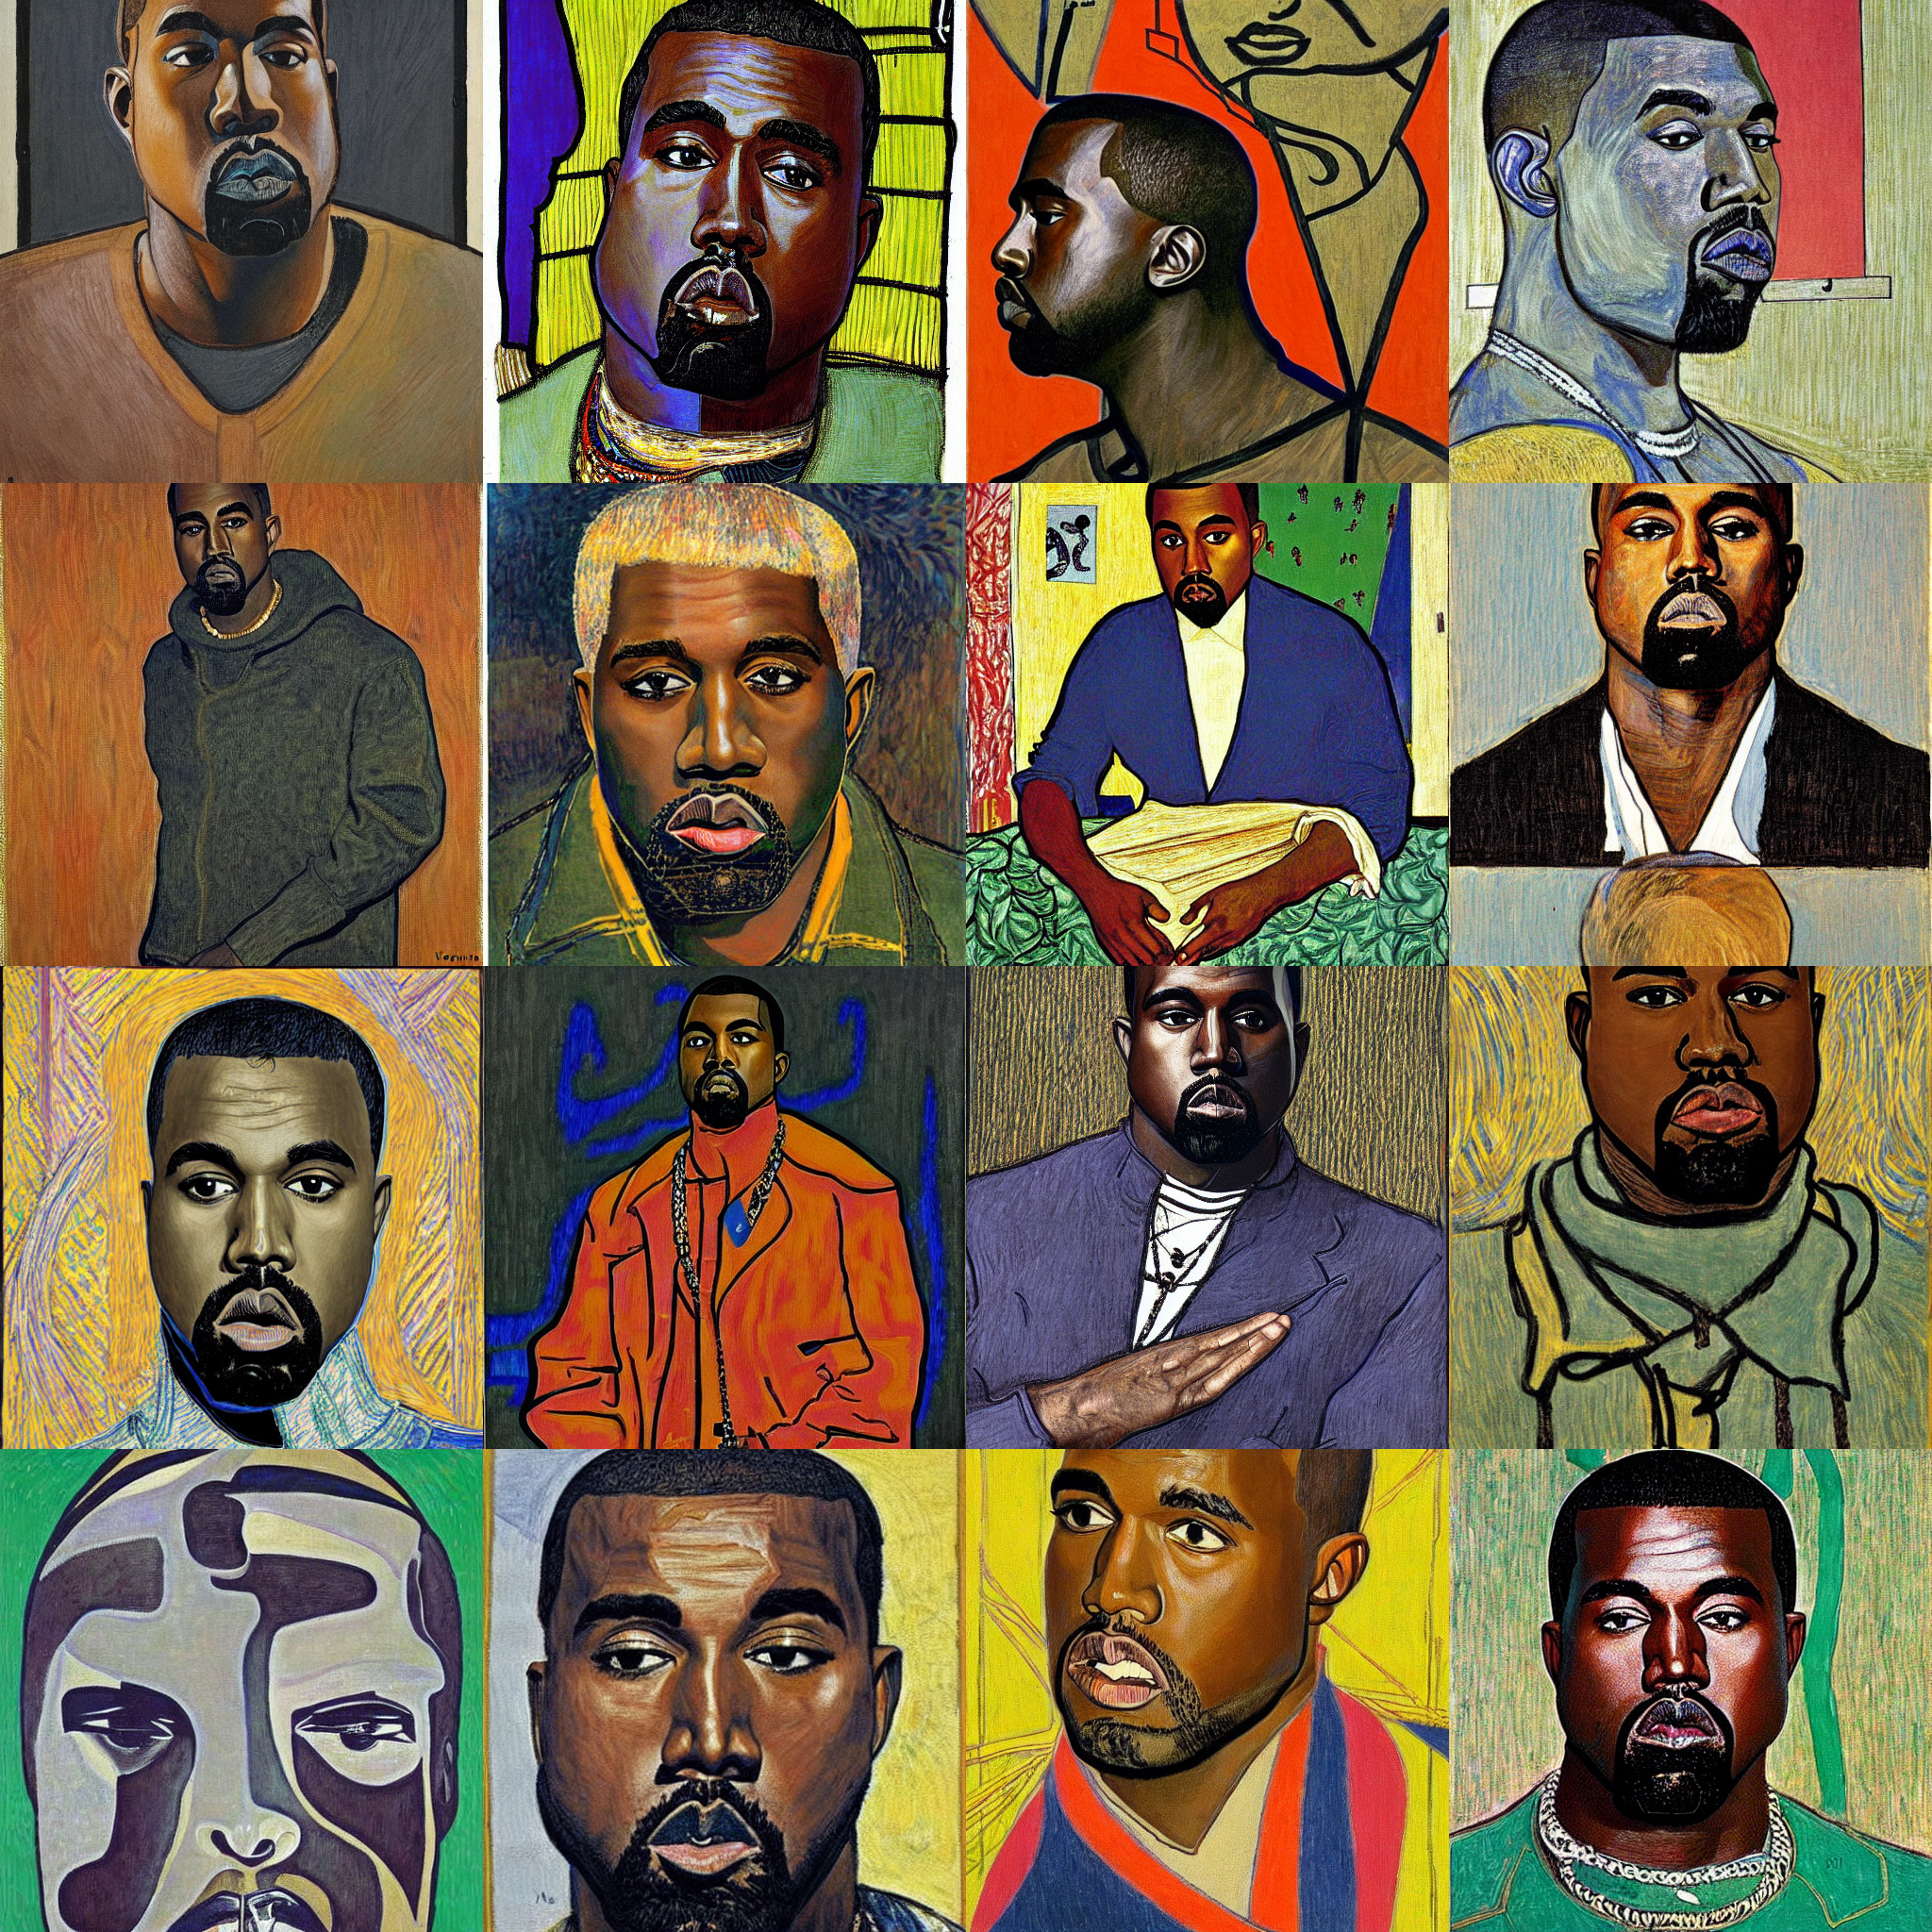 "Kanye West by Jan Toorop and Viktor Vasnetsov"